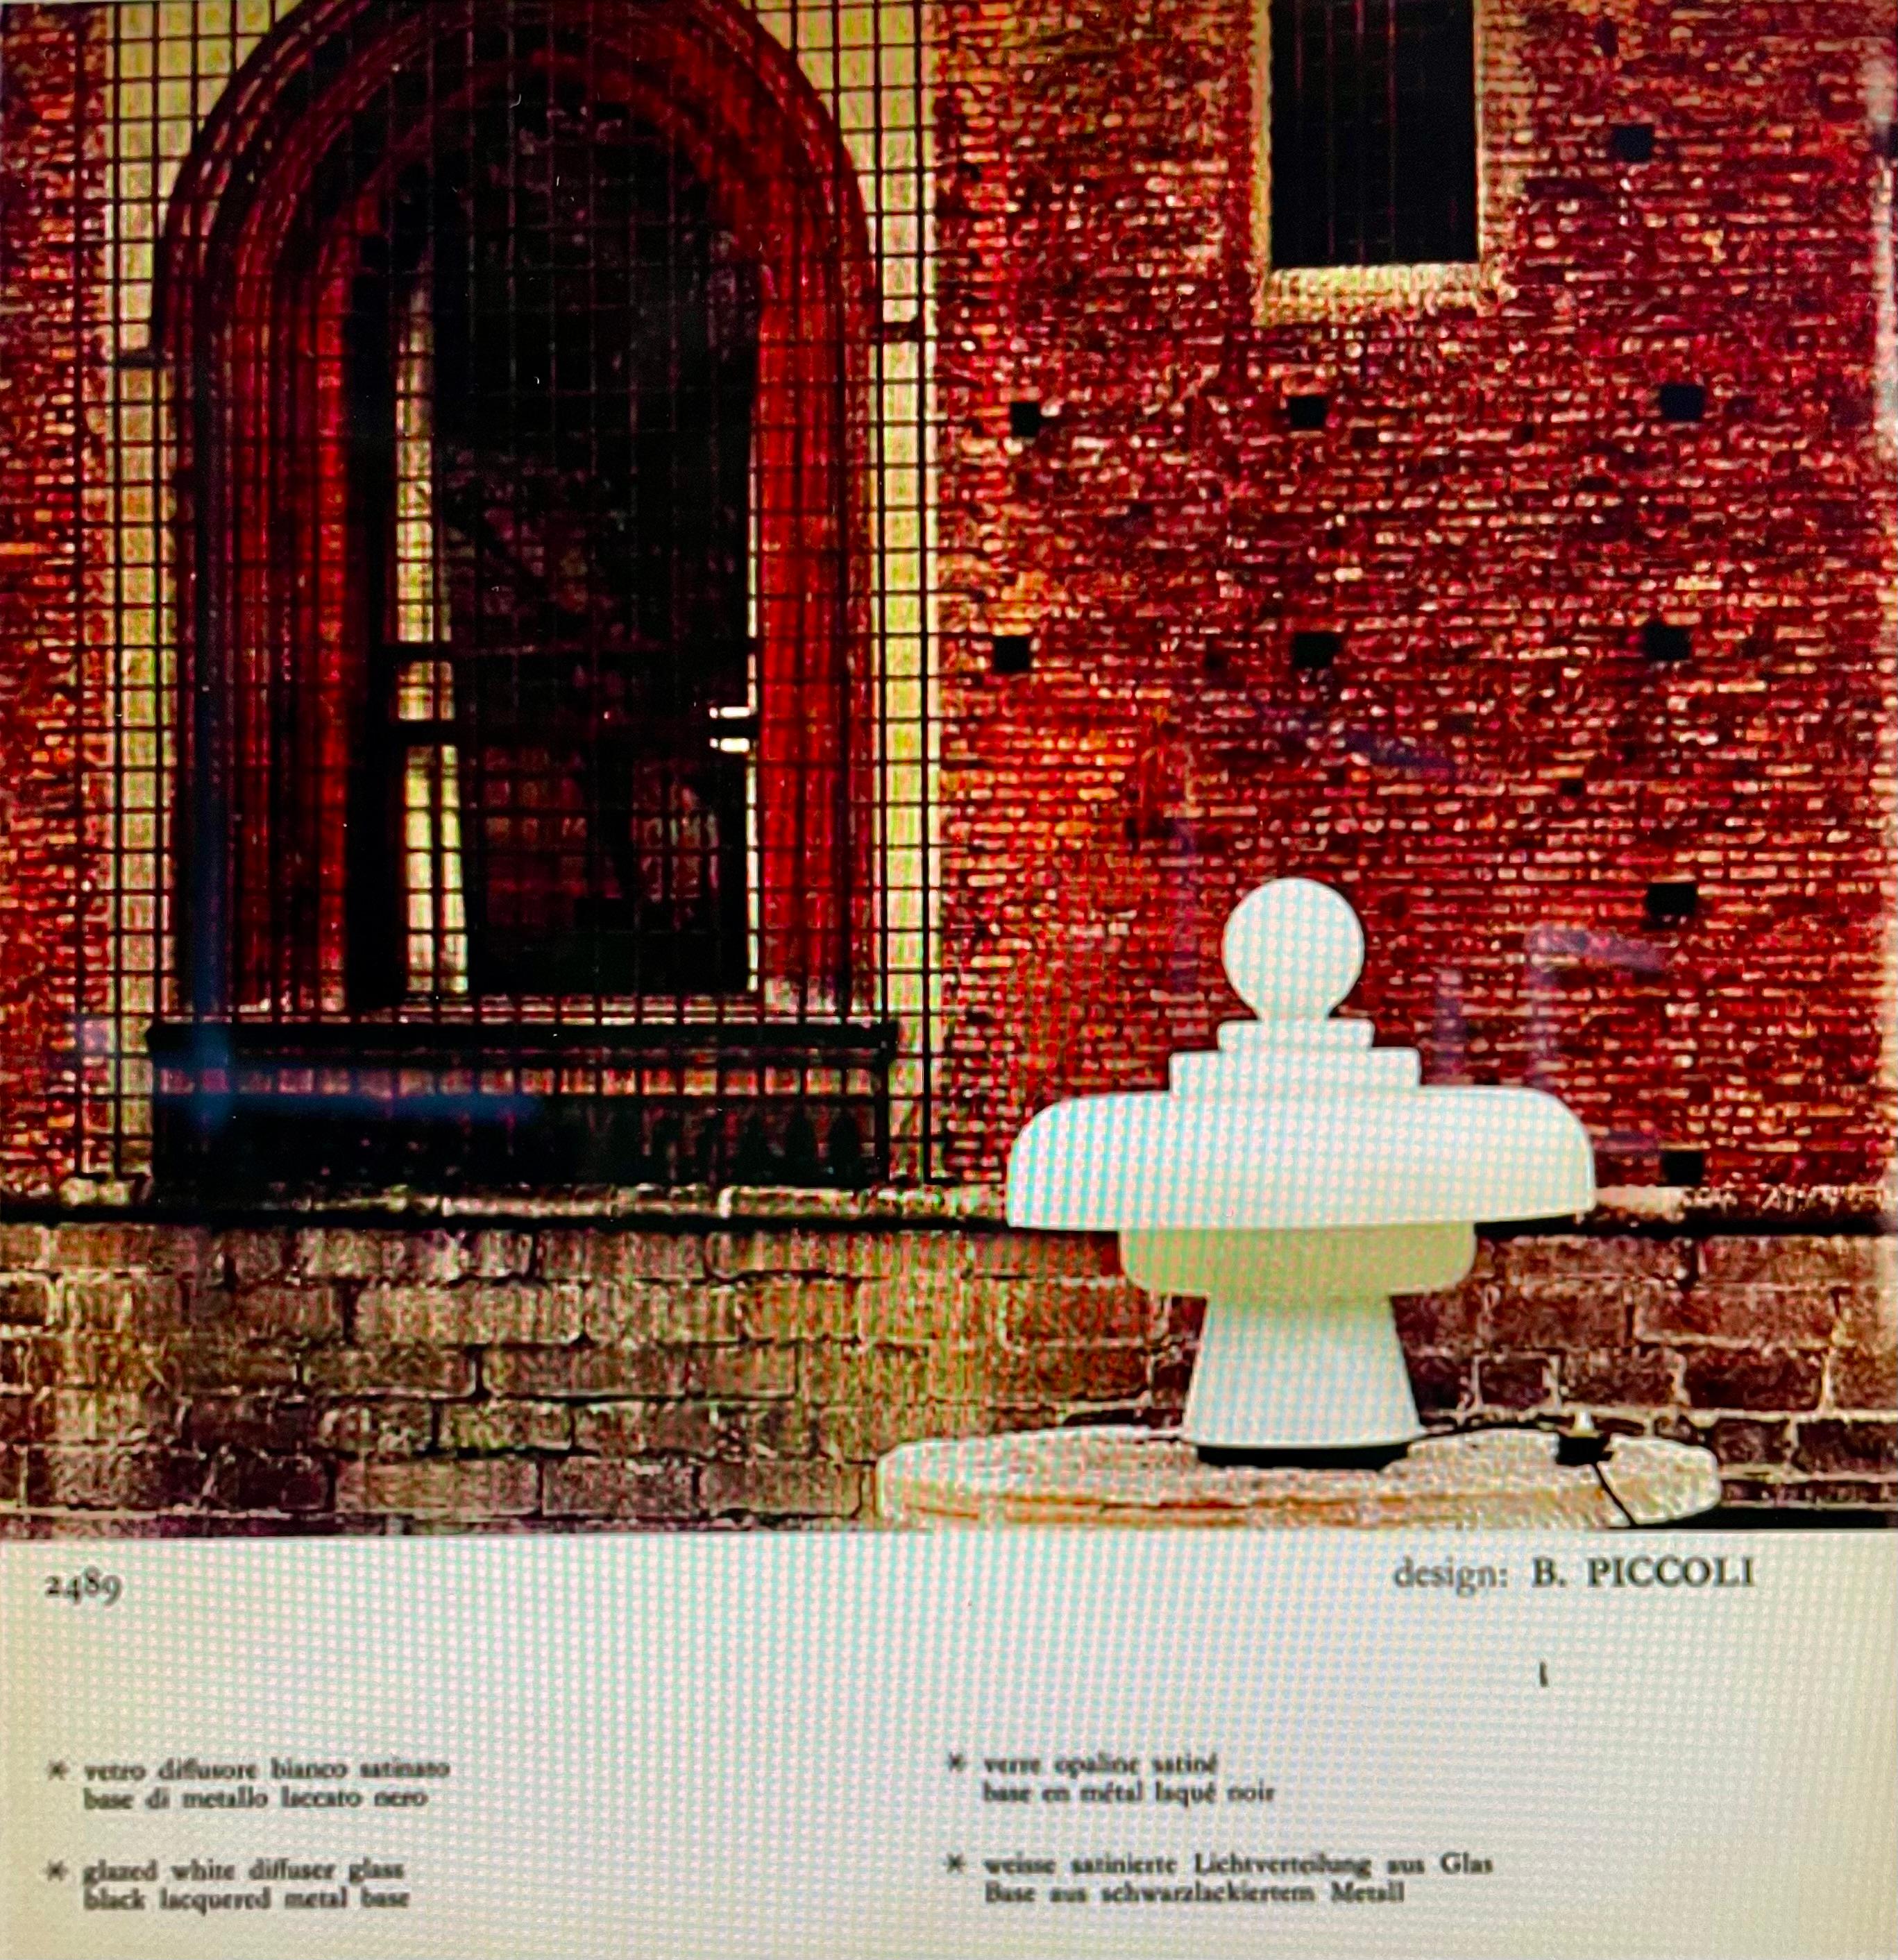 Tischleuchte entworfen von Bobo Piccoli. Italien, Fontana Arte, 1968.

Große Tischleuchte 